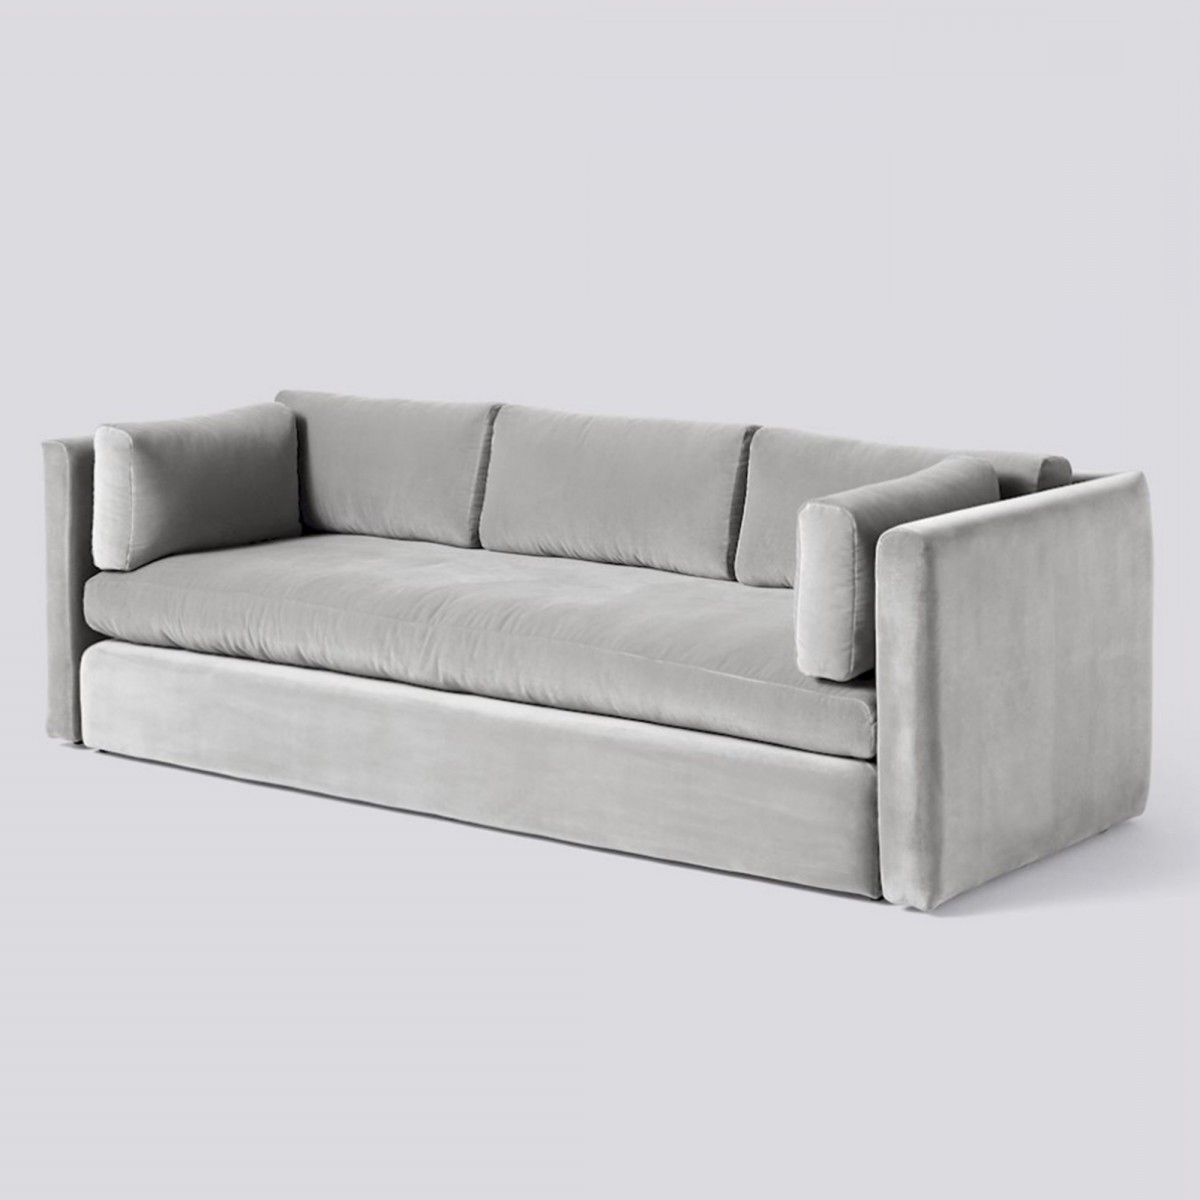 Hackney Light Grey Velvet Sofa – Hay | Grey Velvet Sofa, Hay Hackney Sofa,  Classic Sofa Designs Pertaining To Light Gray Velvet Sofas (Gallery 12 of 20)